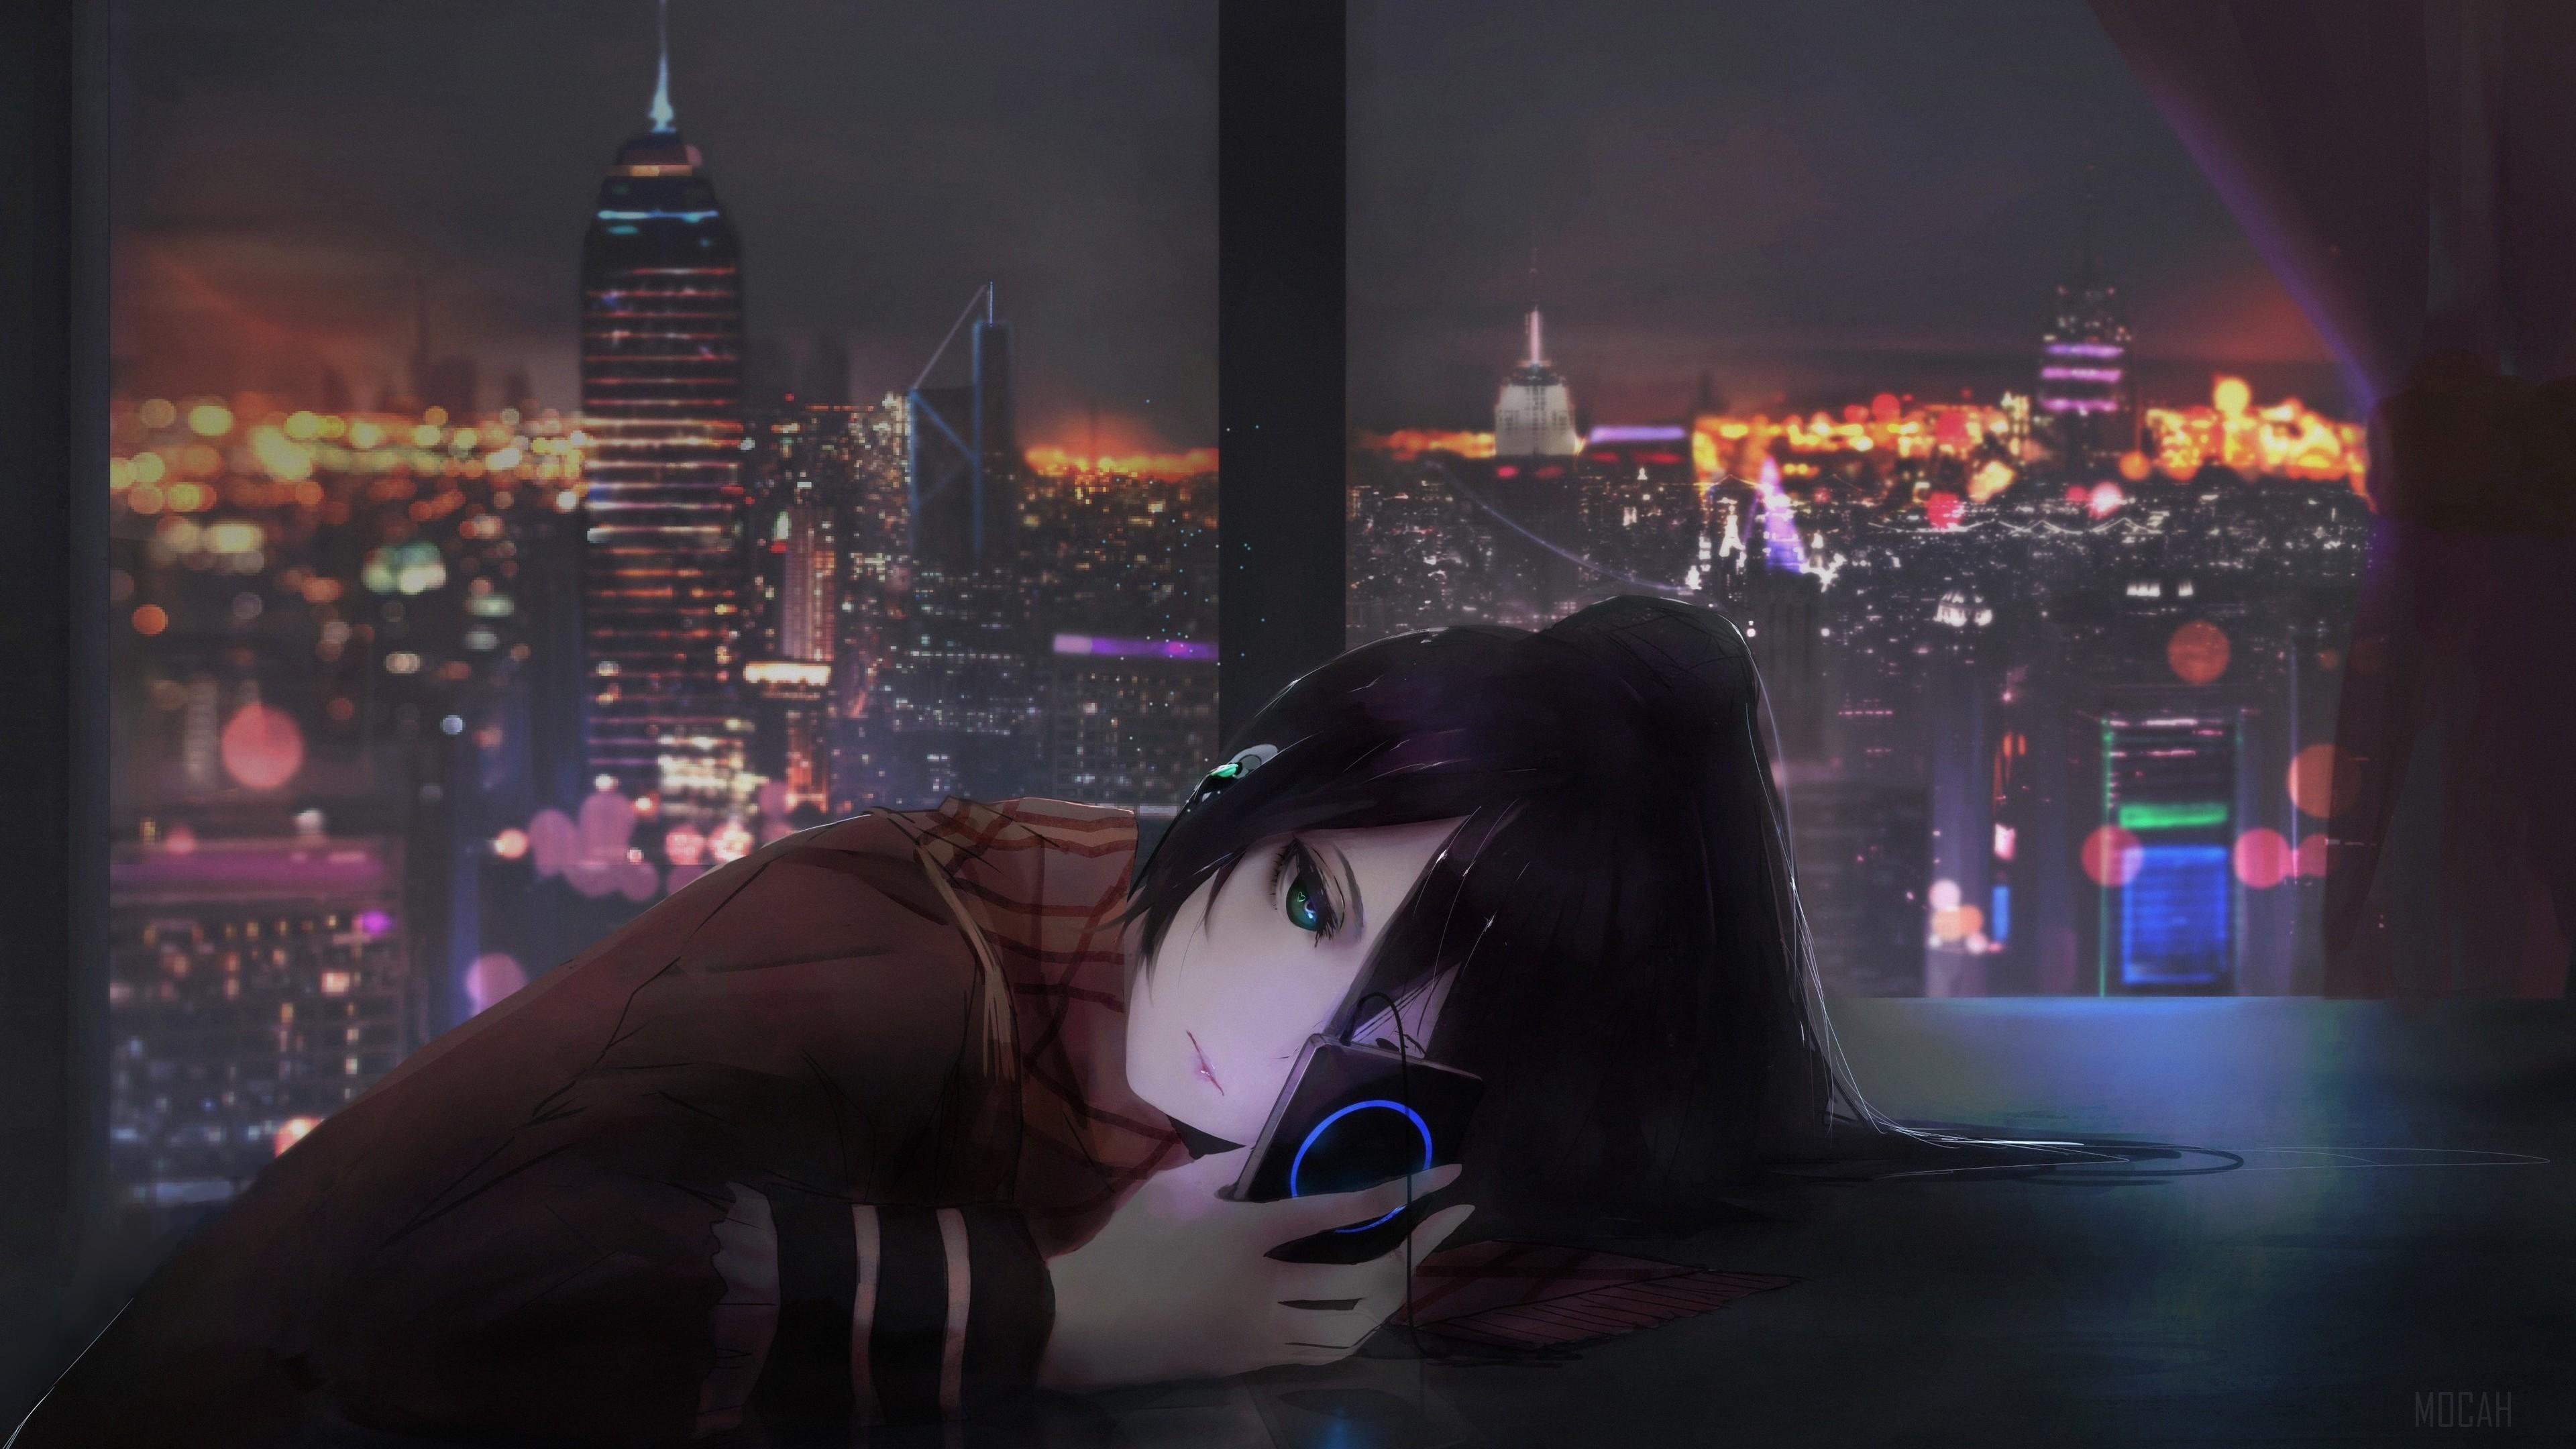 HD wallpaper, Anime Girl Listening Music On Ipod 4K